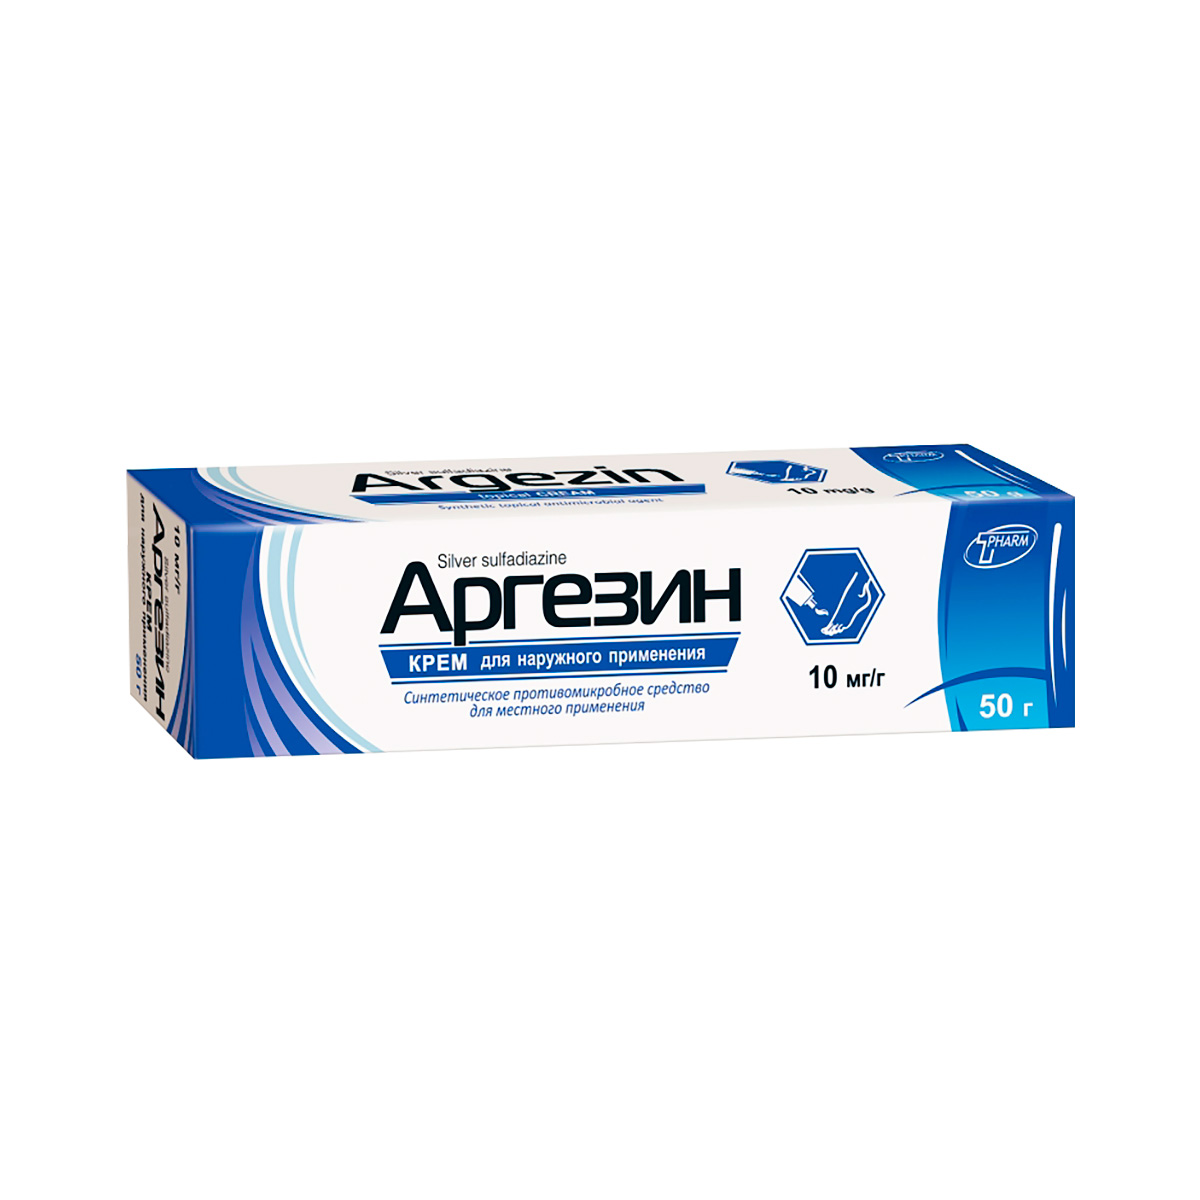 Аргезин 10 мг/г крем для наружного применения 50 г туба 1 шт